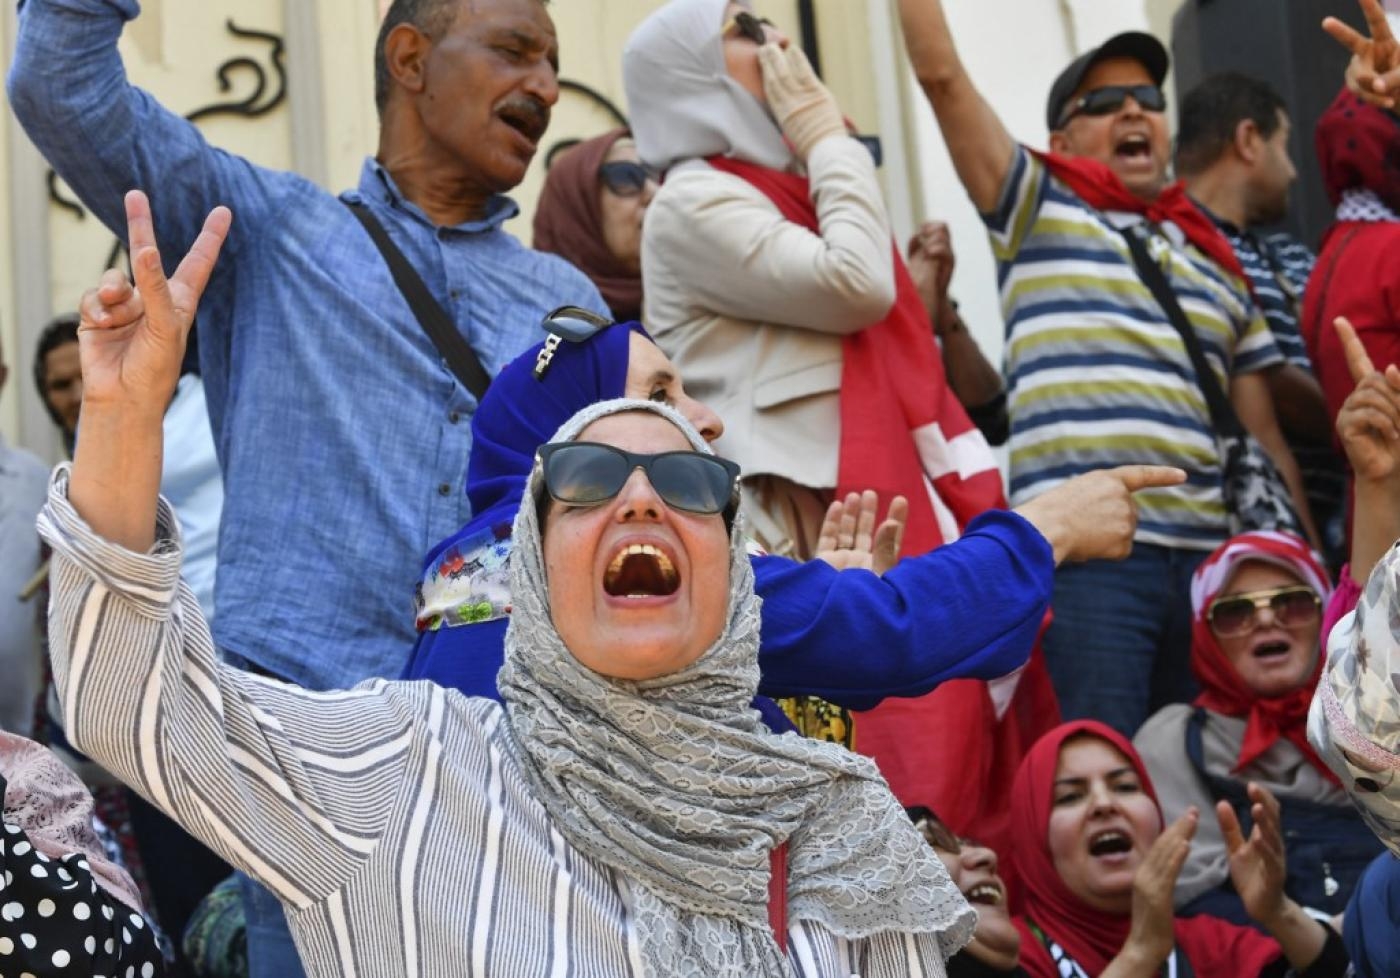 Des manifestants tunisiens scandent des slogans hostiles au président Kais Saied et au référendum constitutionnel du 25 juillet, lors d’un rassemblement dans la capitale, Tunis, le 19 juin 2022 (AFP)